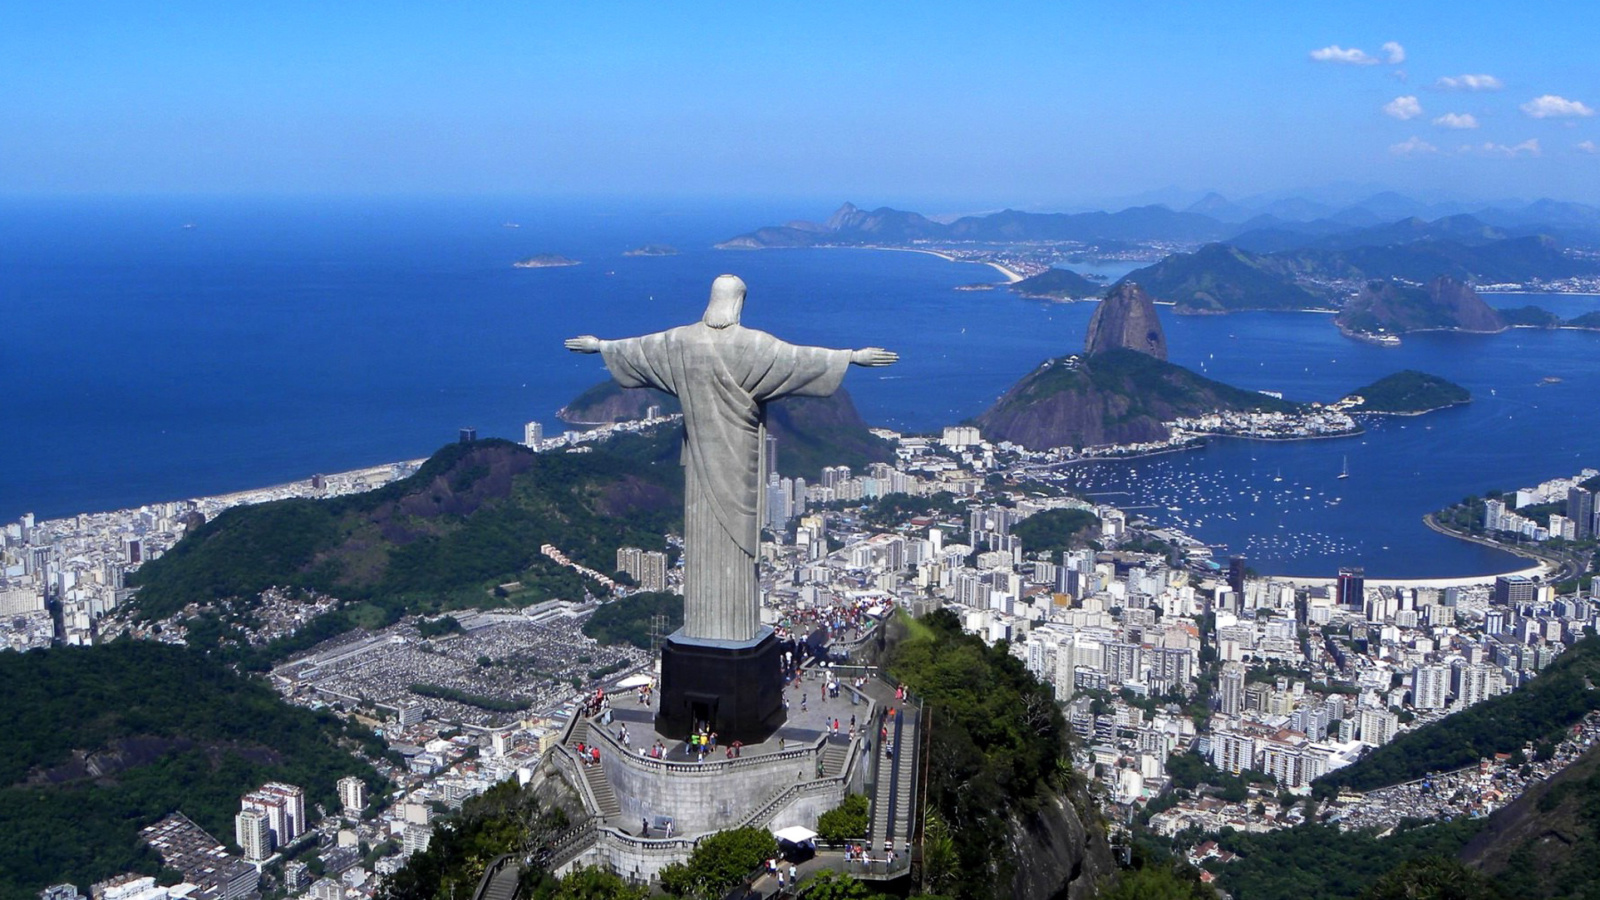 Christ the Redeemer statue in Rio de Janeiro wallpaper 1600x900